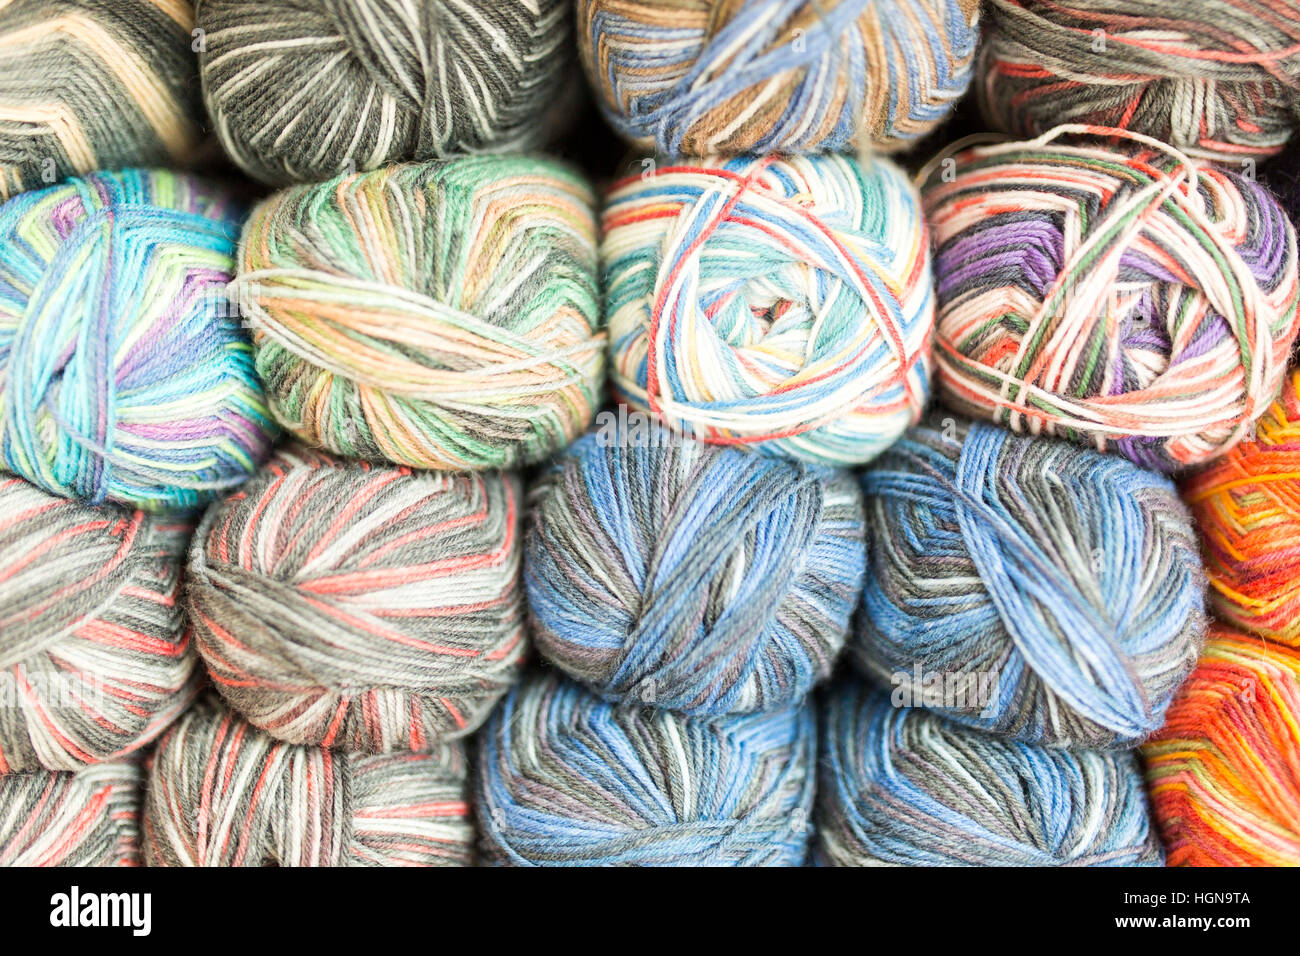 Knitting - balls of wool on a shelf Stock Photo